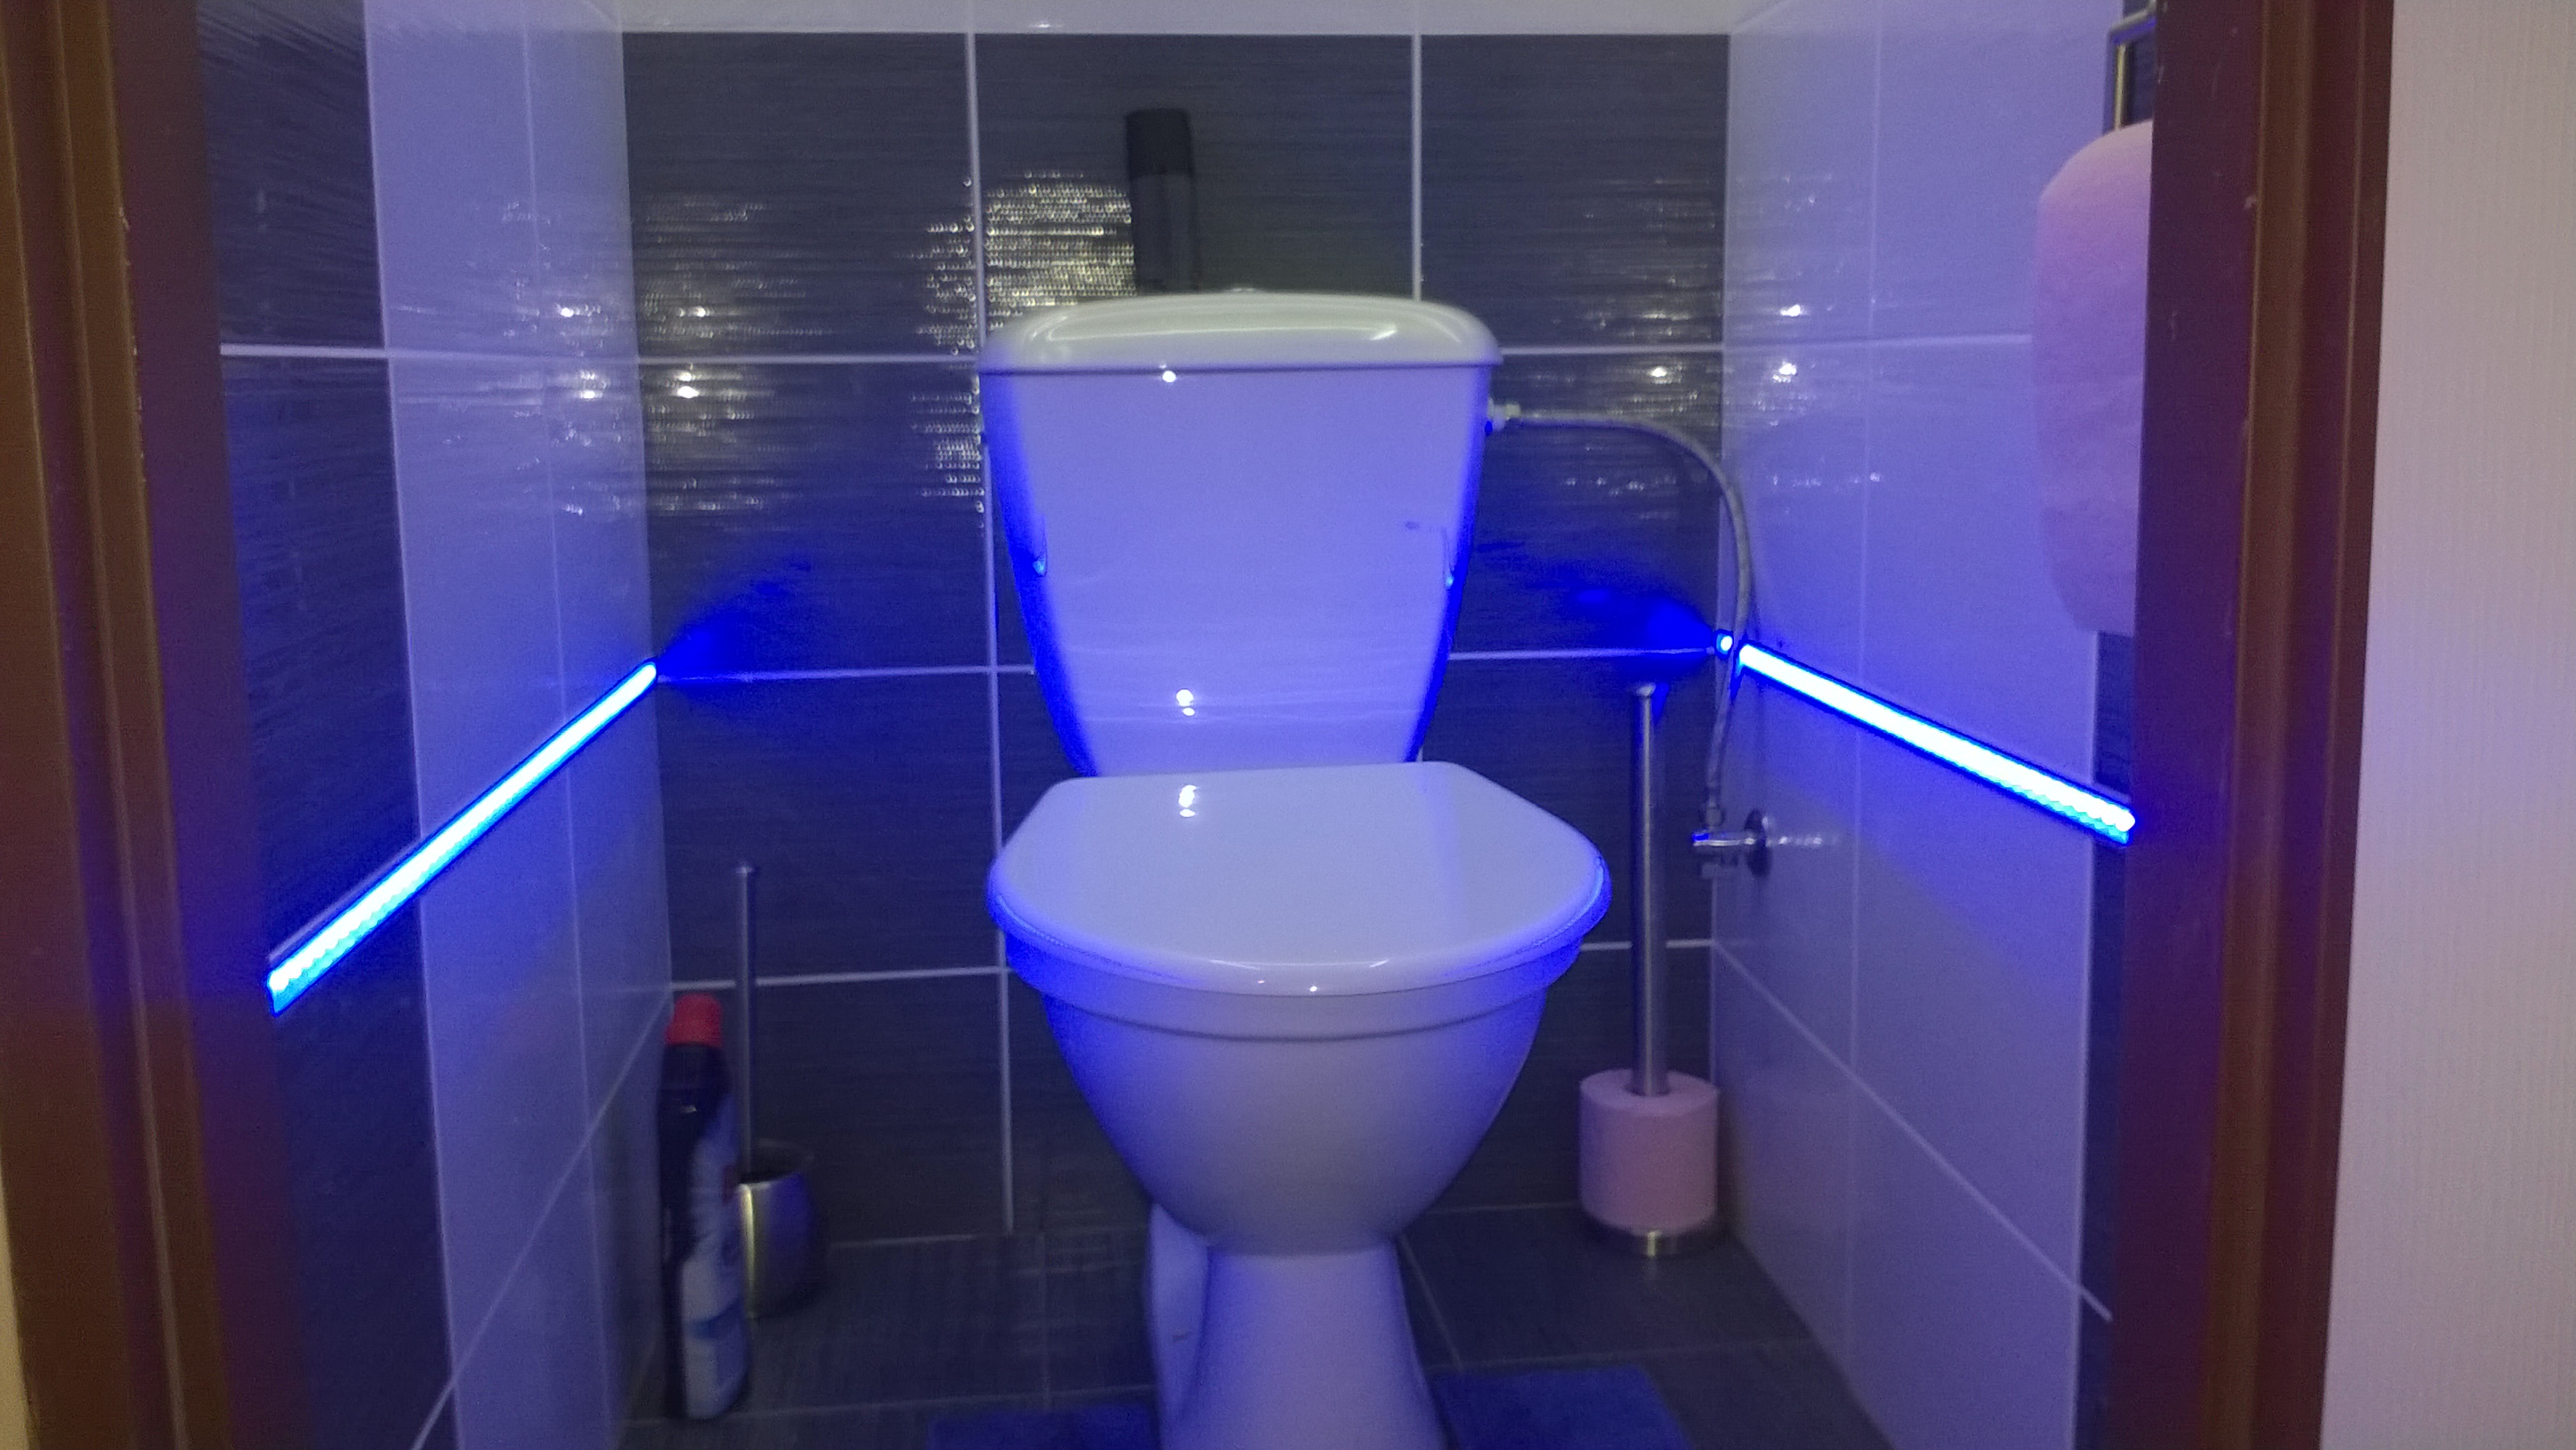 Osvětlení WC, modrý LED pásek je ovládaný PIR čidlem do profilu